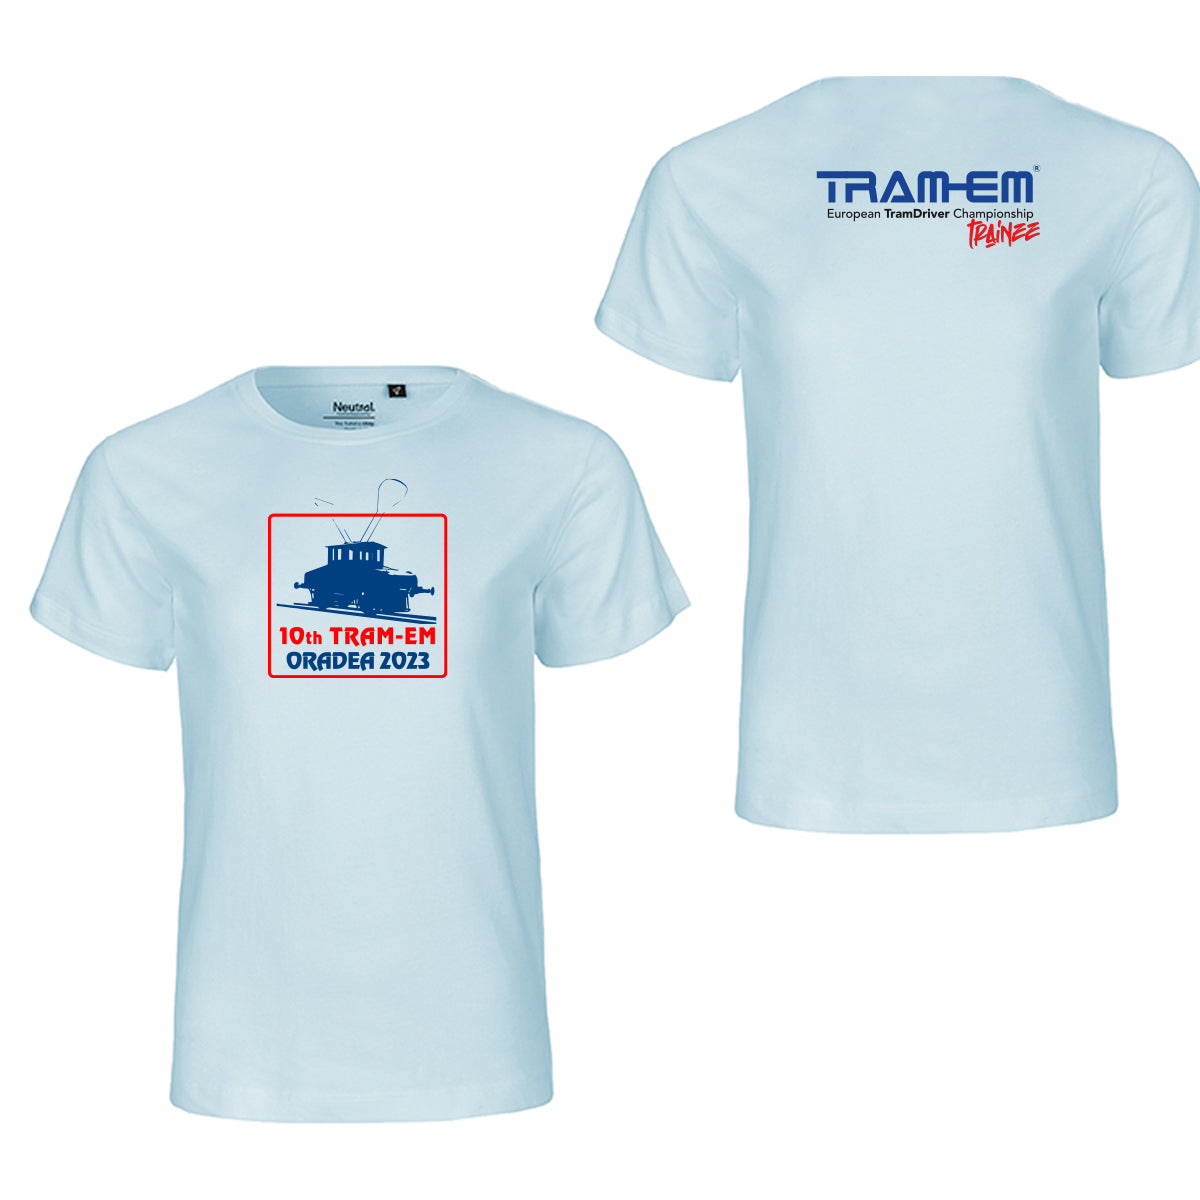 10th TRAM-EM 2023 Oradea Trainee | Kids BIO-Shirt